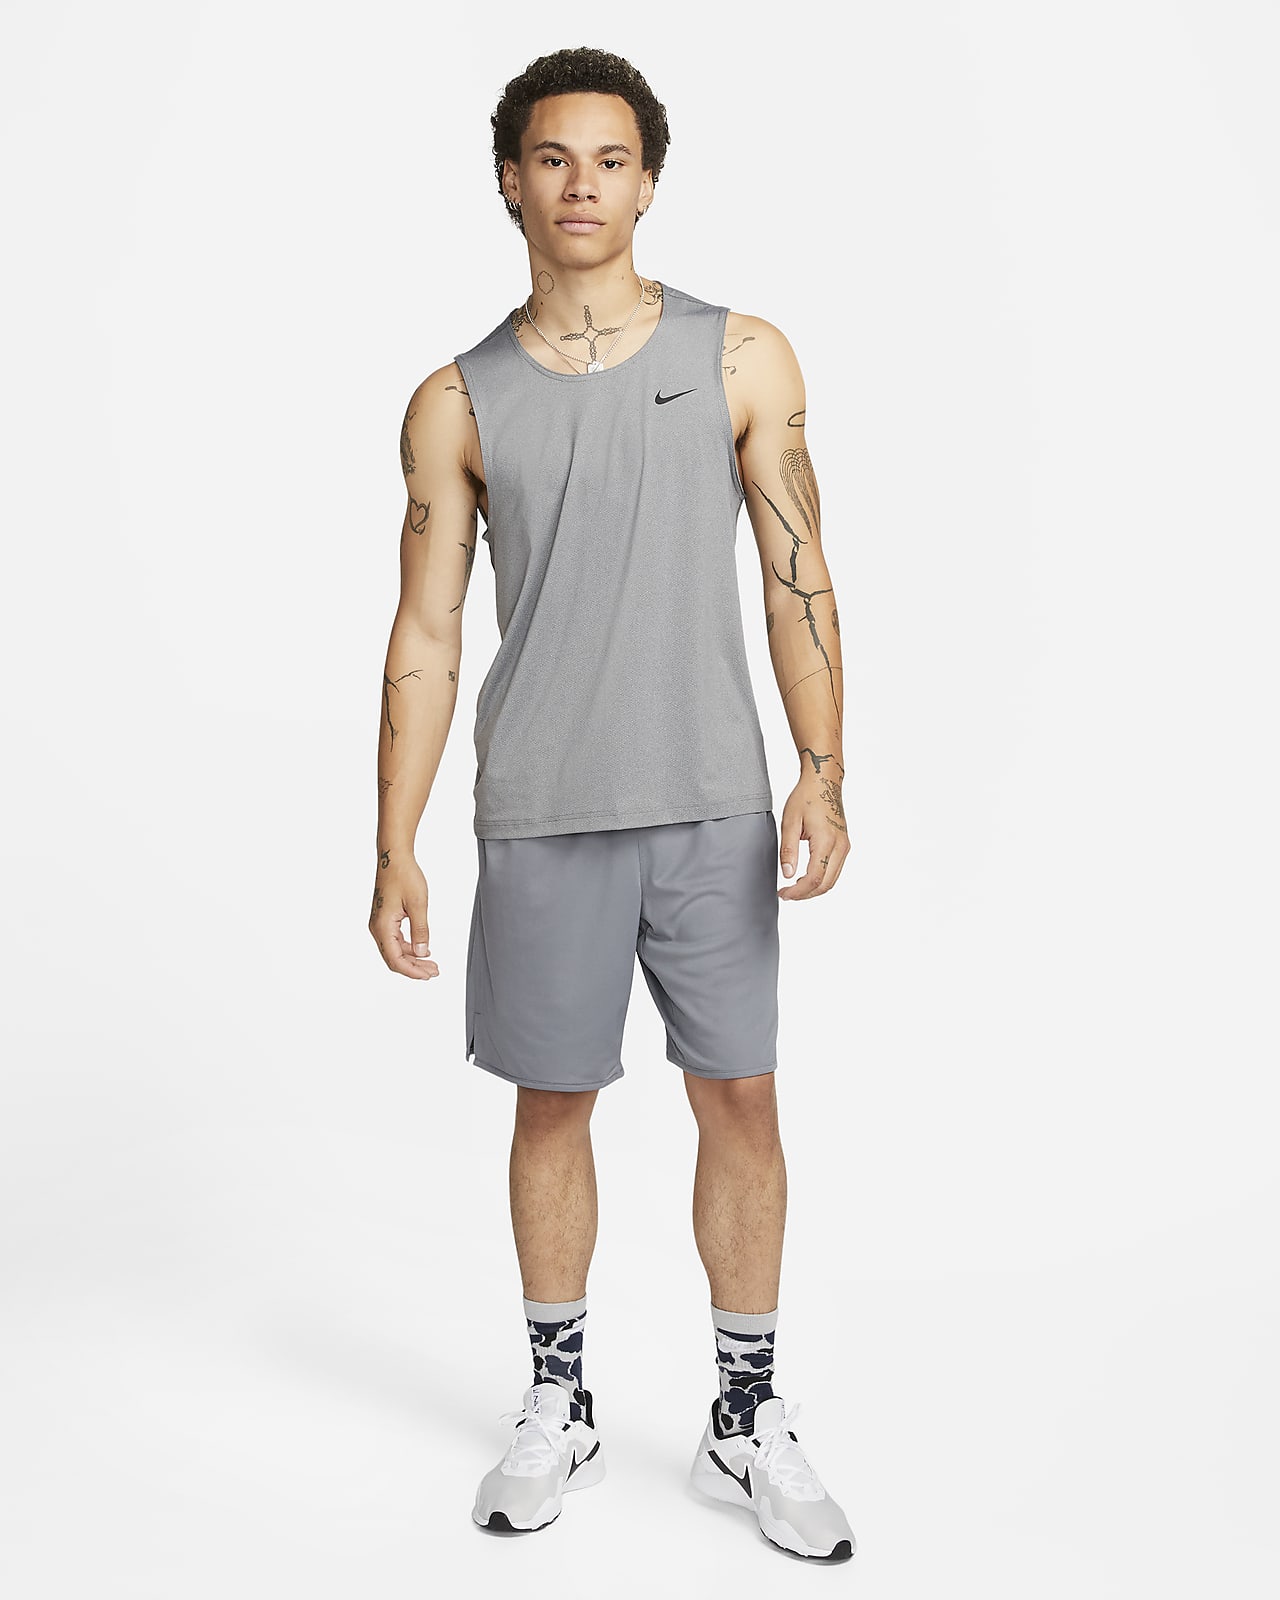 Nike Ready Dri-FIT Fitness Tank Top. Nike